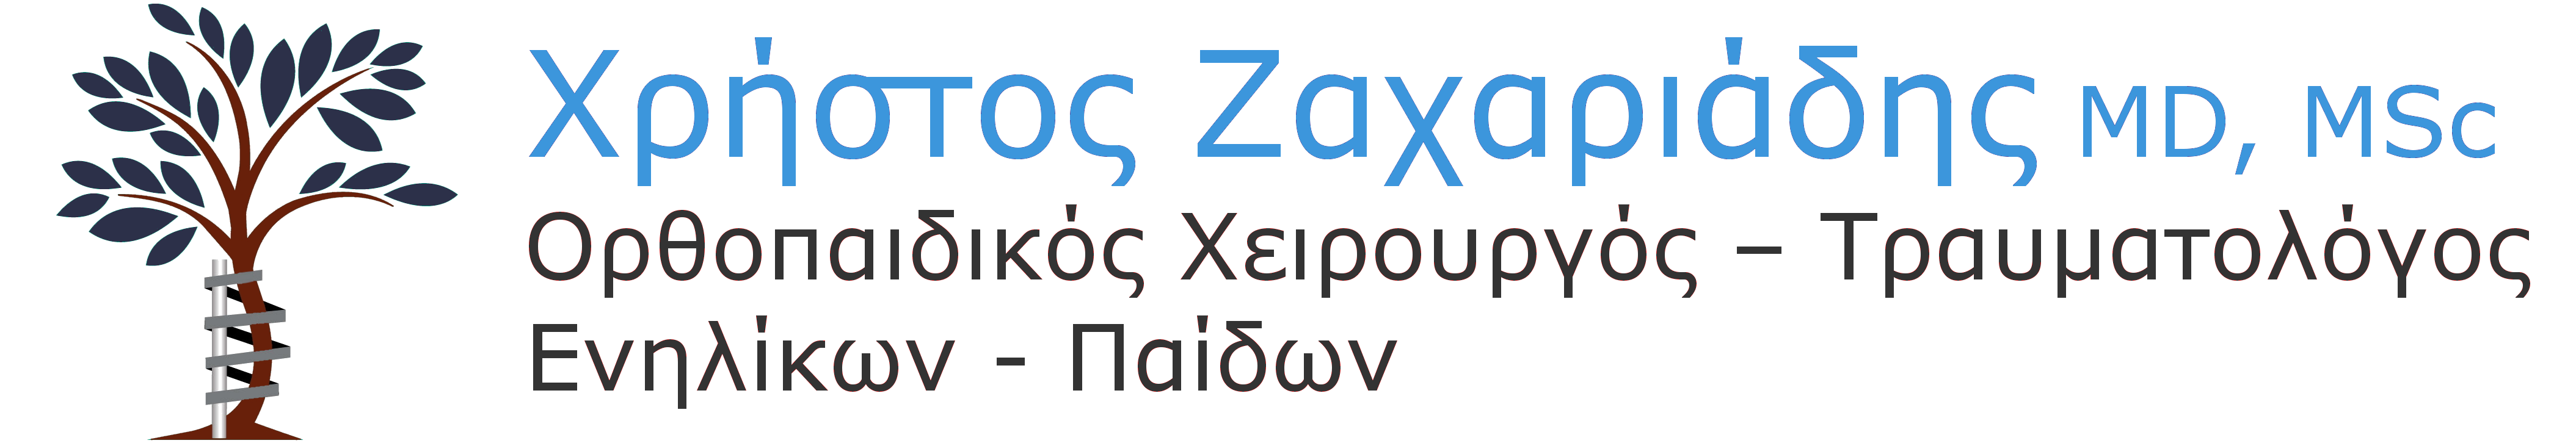 Χρήστος Ζαχαριάδης